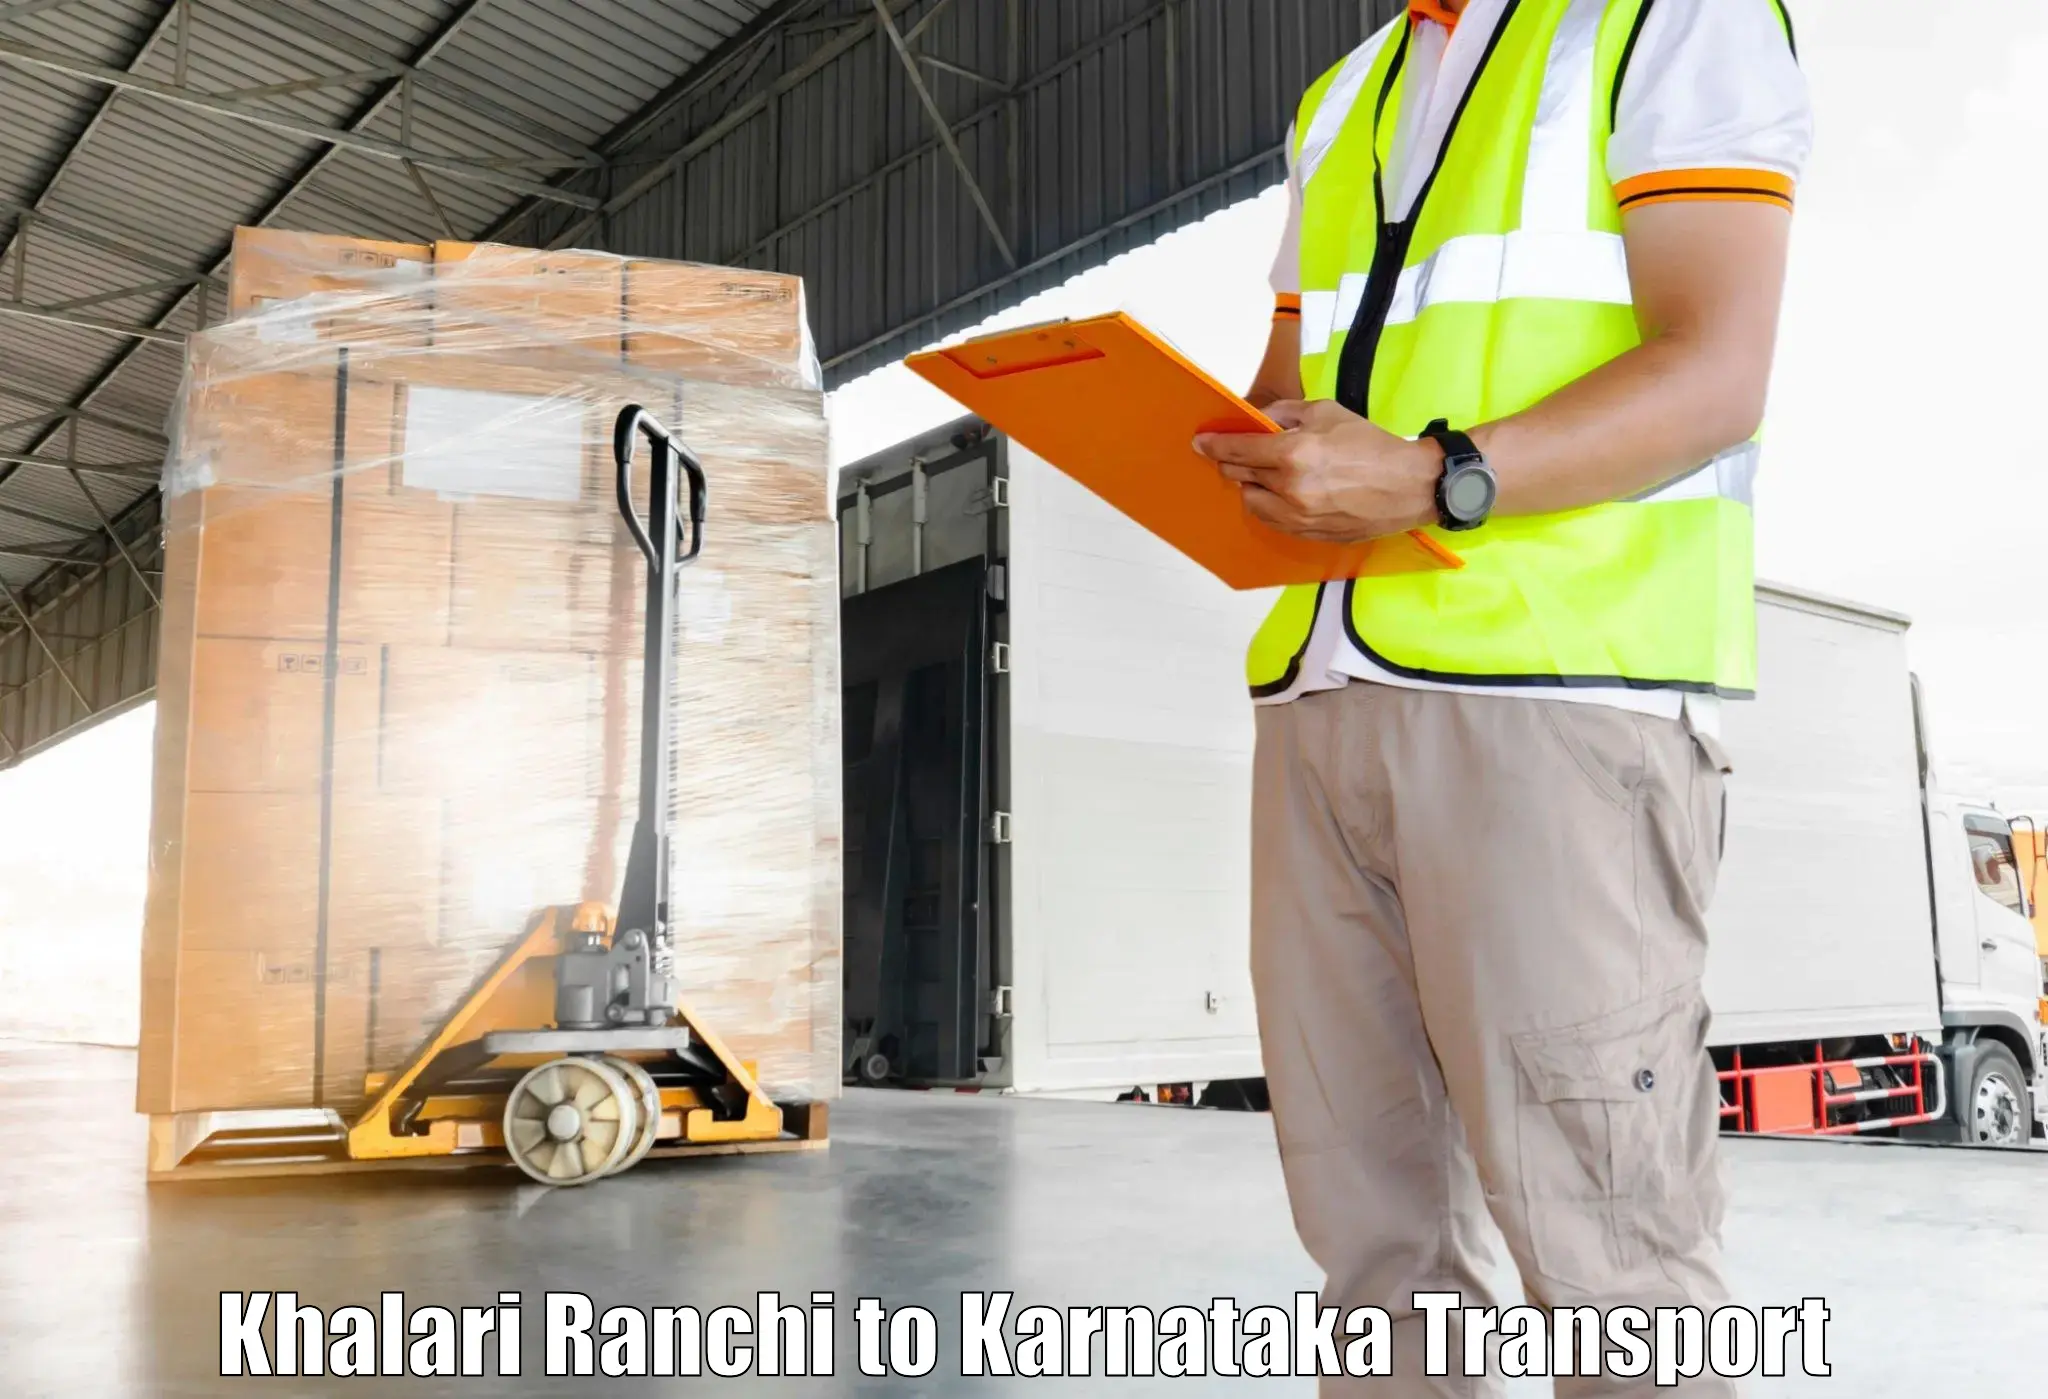 Transport services Khalari Ranchi to Kanjarakatte